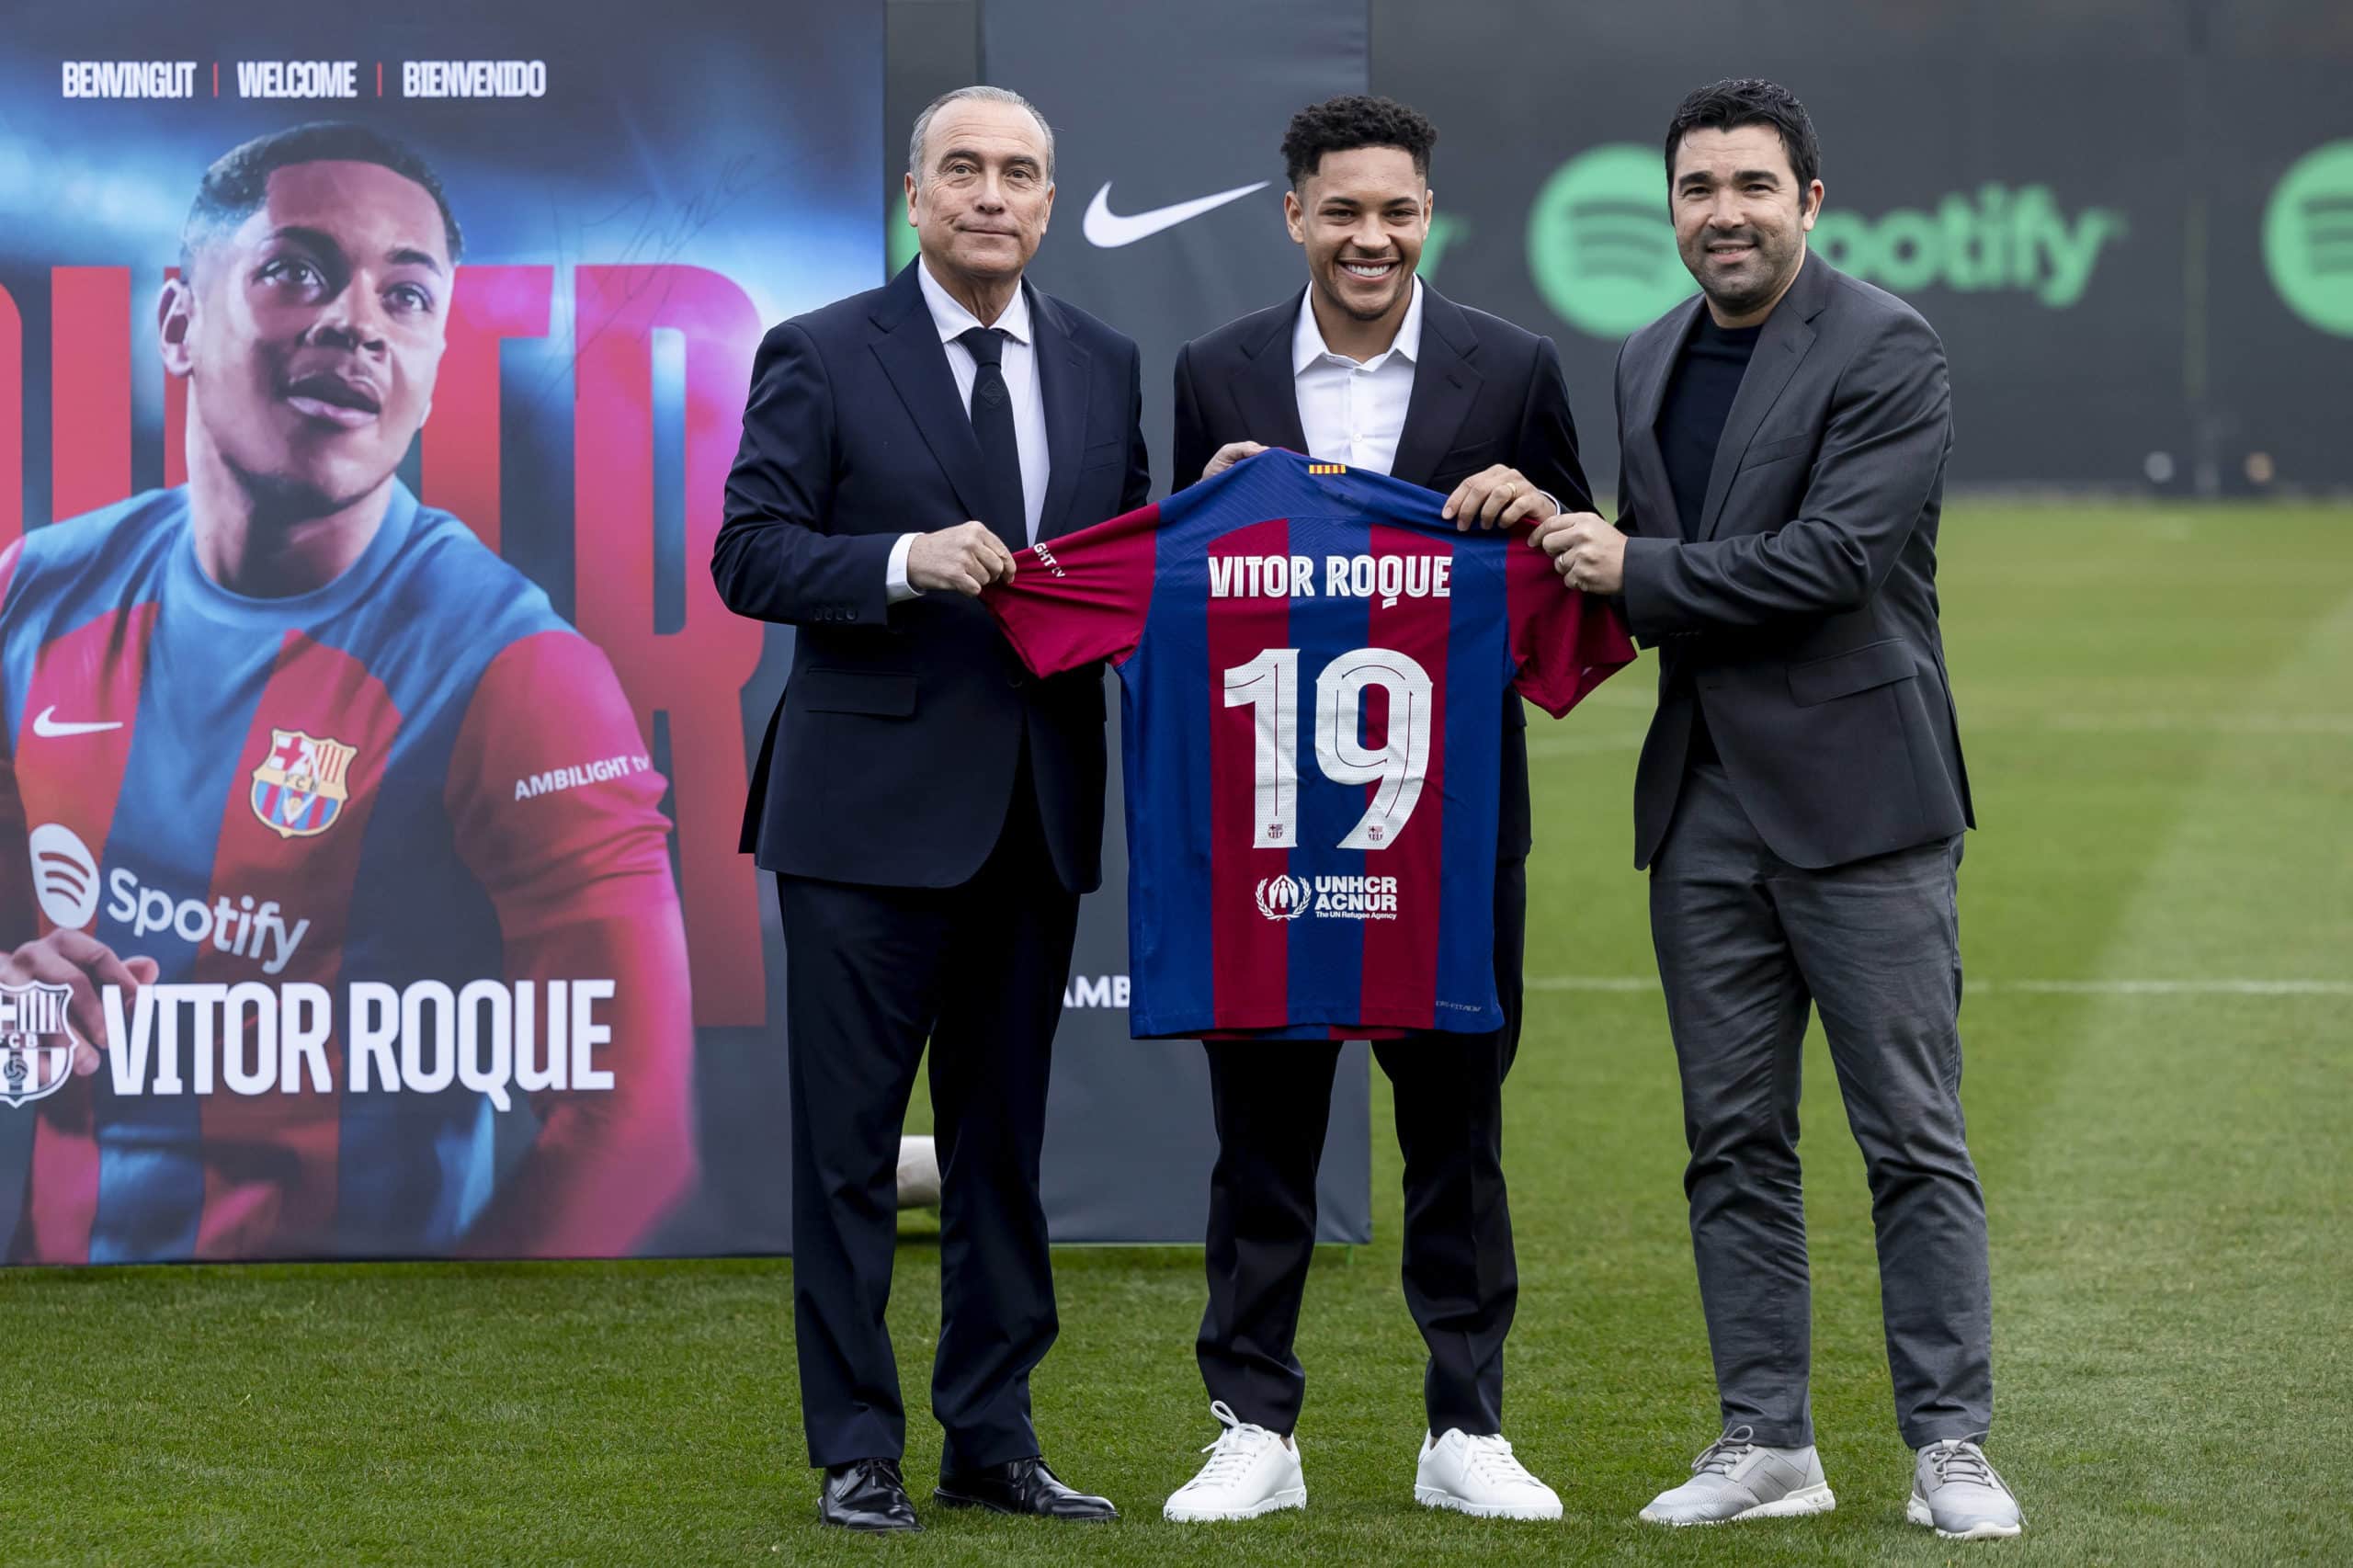 Vitor Roque é o novo camisa 19 do Barça